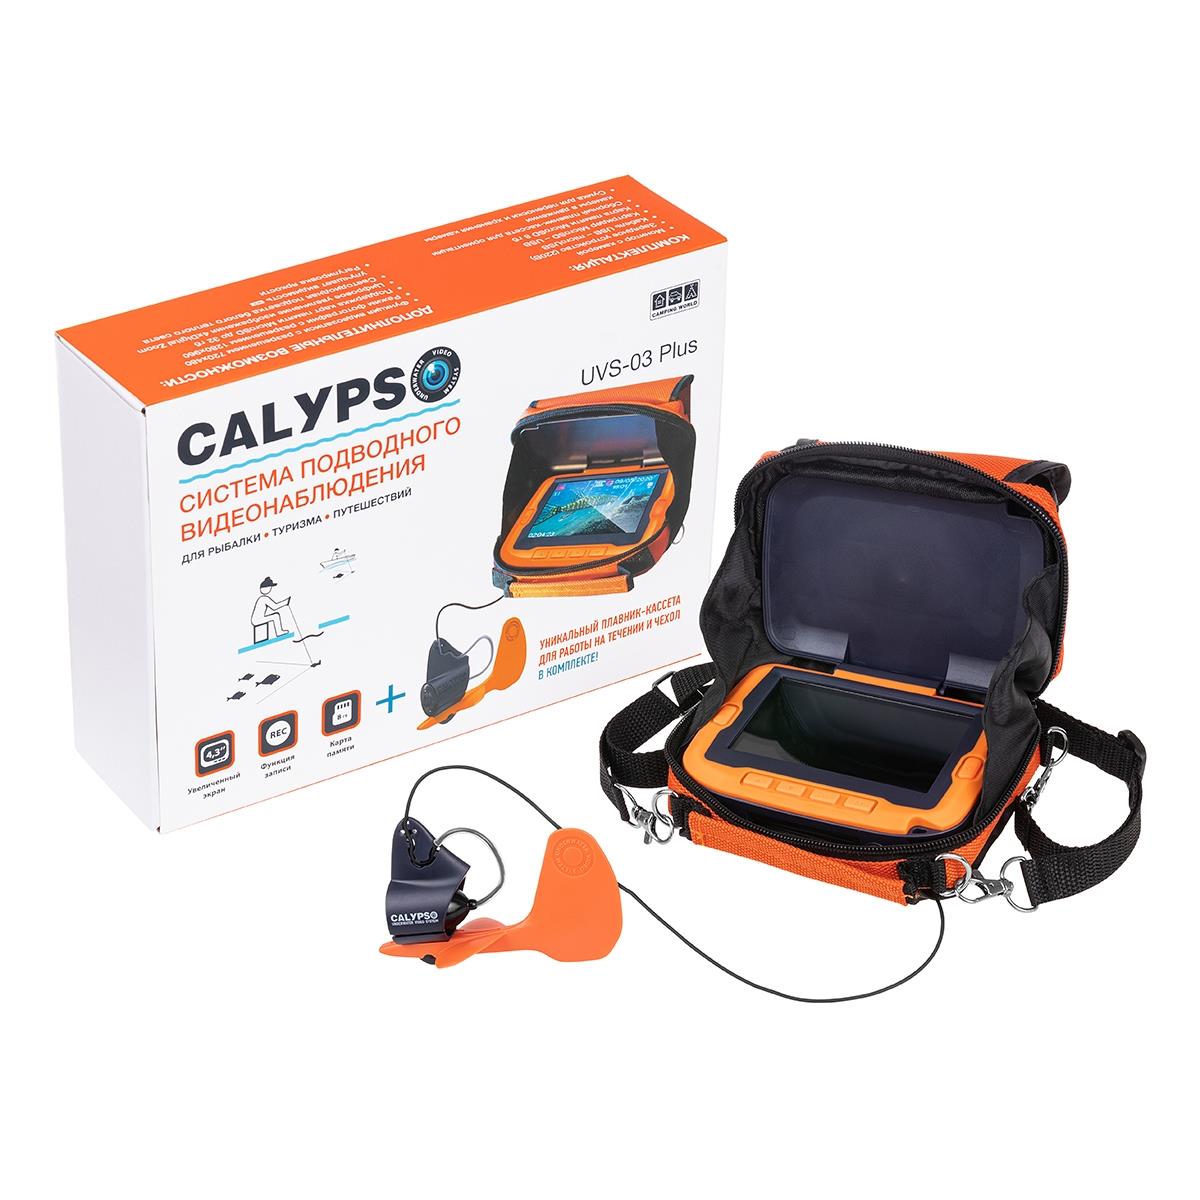 Подводная видеокамера CALYPSO UVS-03 PLUS (FDV-1113) сканер а3 книжный plustek opticbook a300 plus